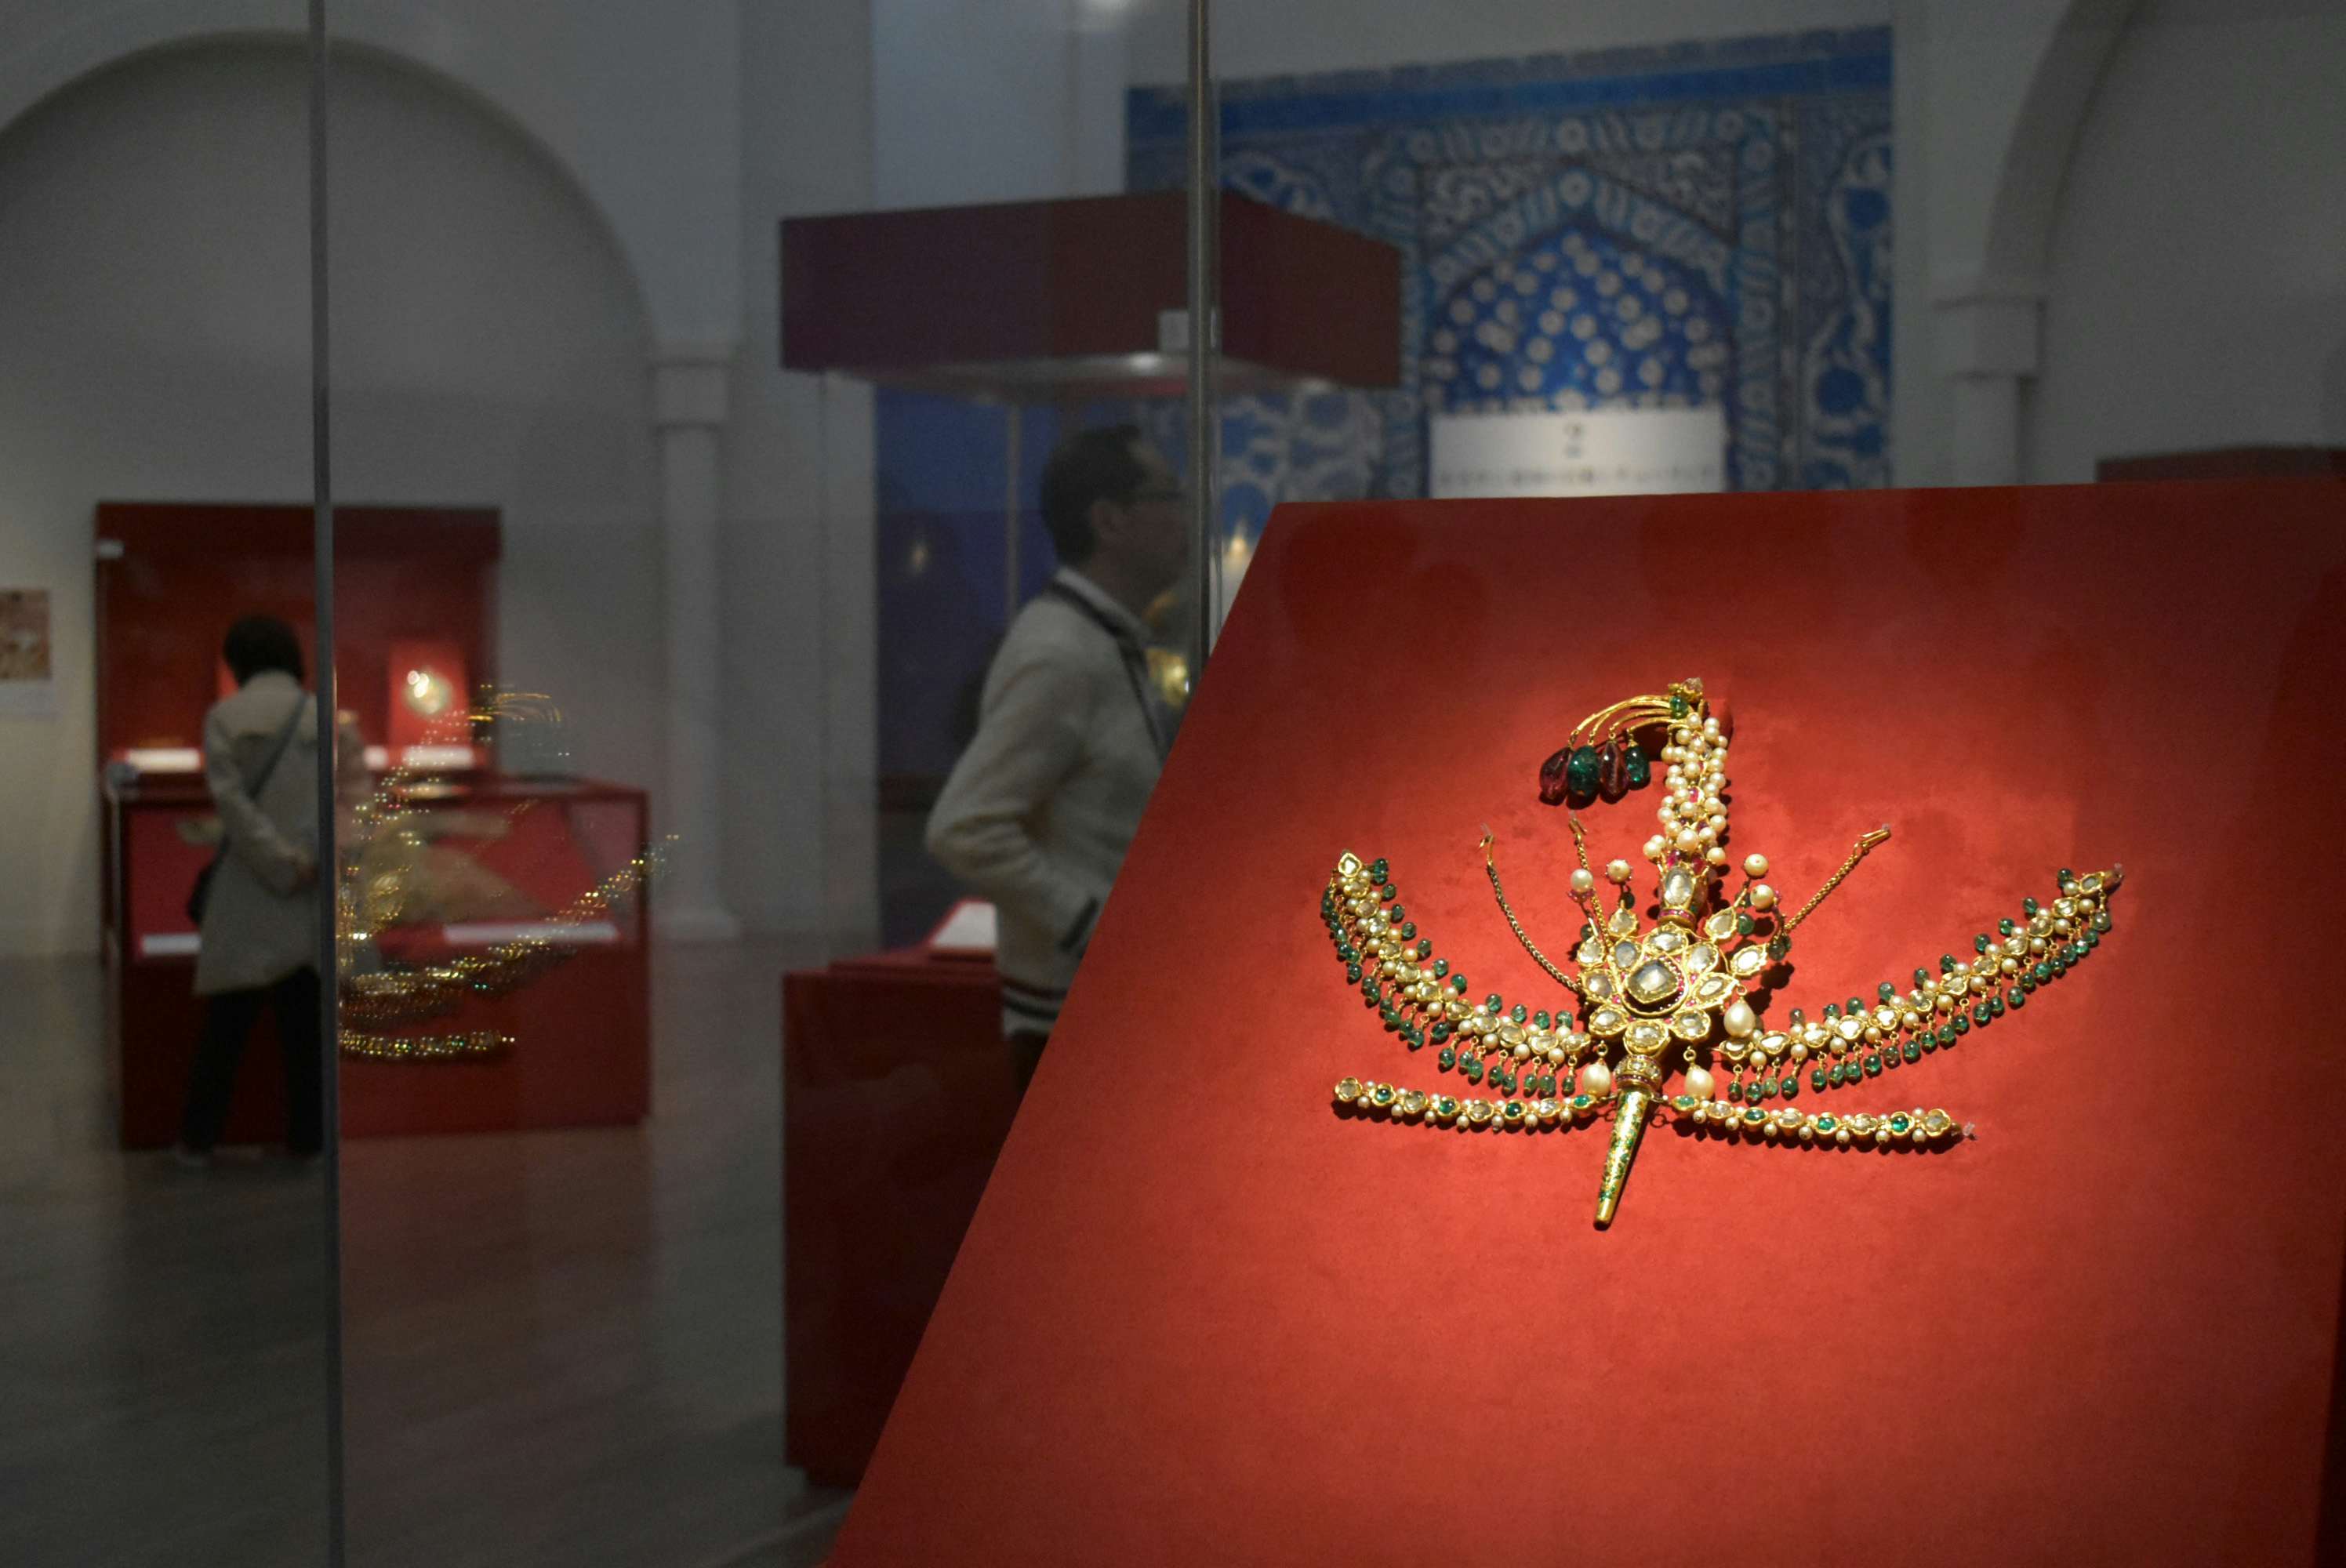 オスマン帝国の至宝約170点が来日。国立新美術館で「トルコ至宝展 